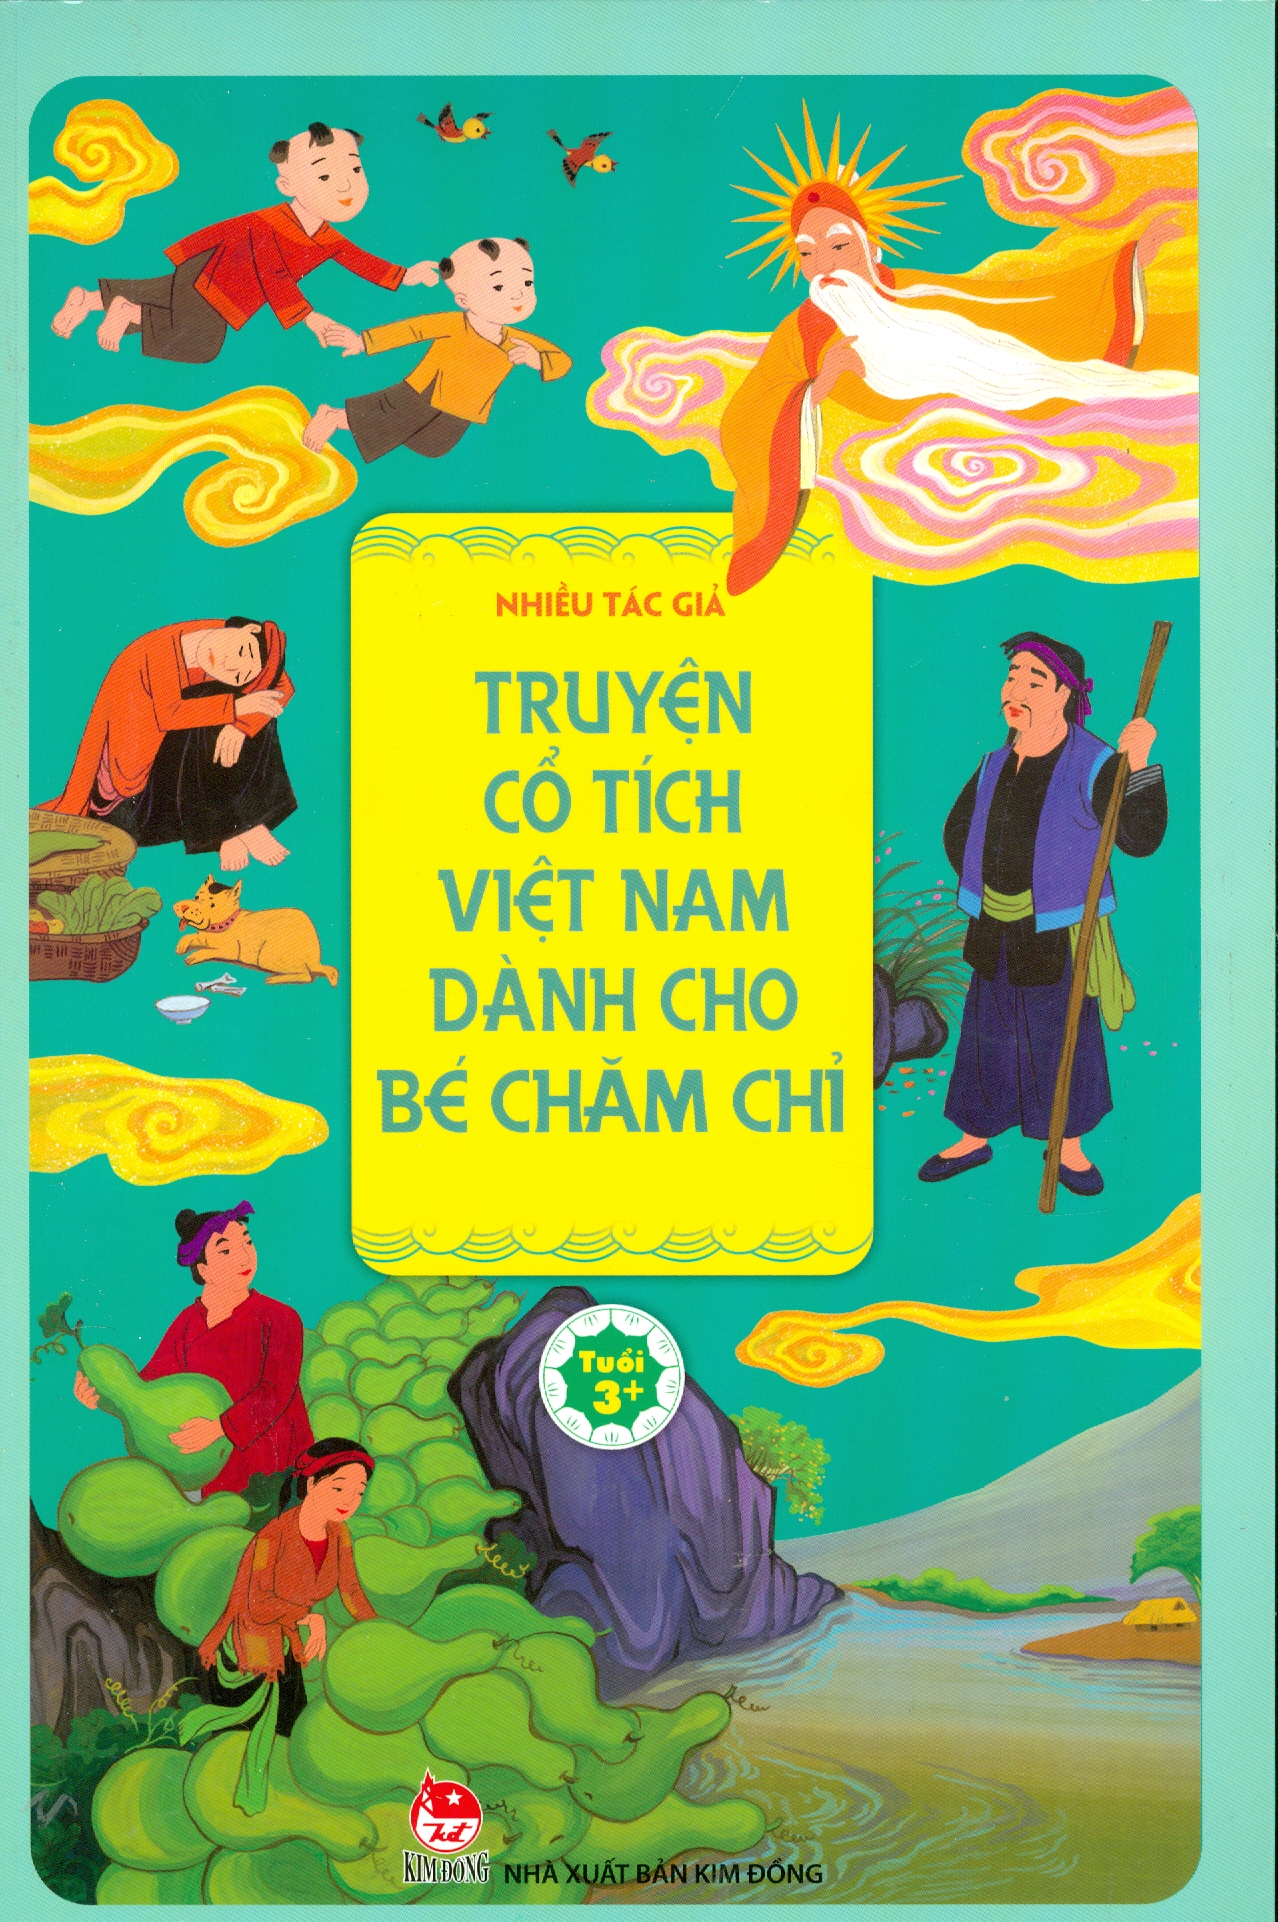 Nếu bạn yêu thích truyện cổ tích có nguồn gốc đậm đà nét văn hóa Việt Nam, hãy đến với chúng tôi và cùng trải nghiệm truyện cổ tích Việt Nam đầy thú vị. Những câu chuyện kèm theo hình ảnh đẹp mắt sẽ đưa bạn đến những thế giới tuyệt diệu, kỳ ảo và đắm say.